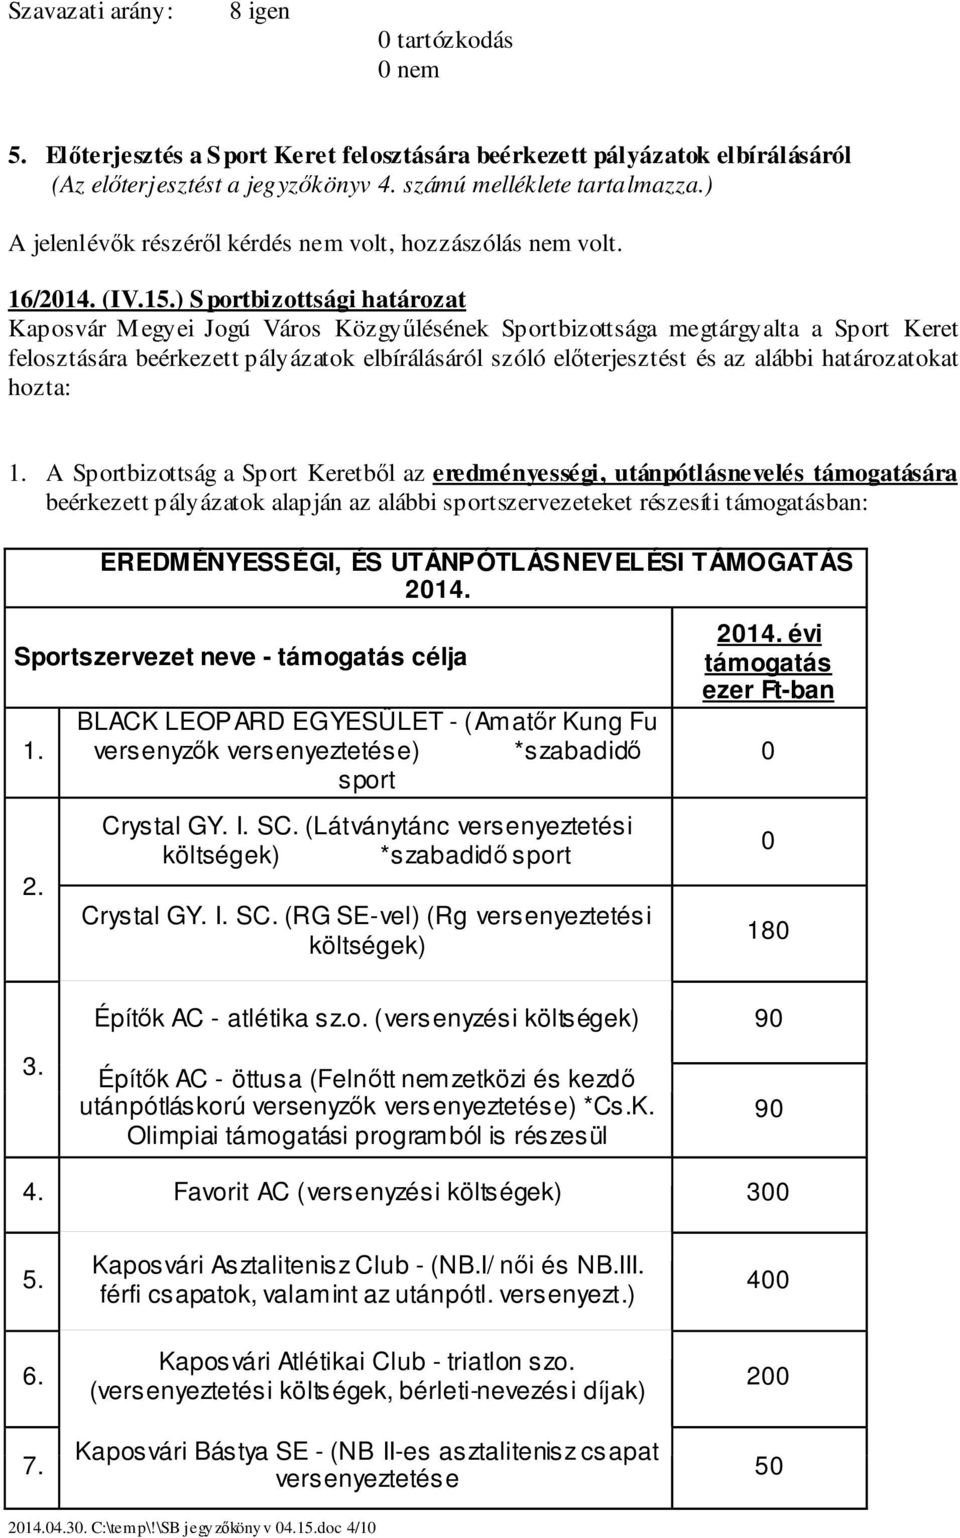 ) Sportbizottsági határozat Kaposvár Megyei Jogú Város Közgyűlésének Sportbizottsága megtárgyalta a Sport Keret felosztására beérkezett pályázatok elbírálásáról szóló előterjesztést és az alábbi